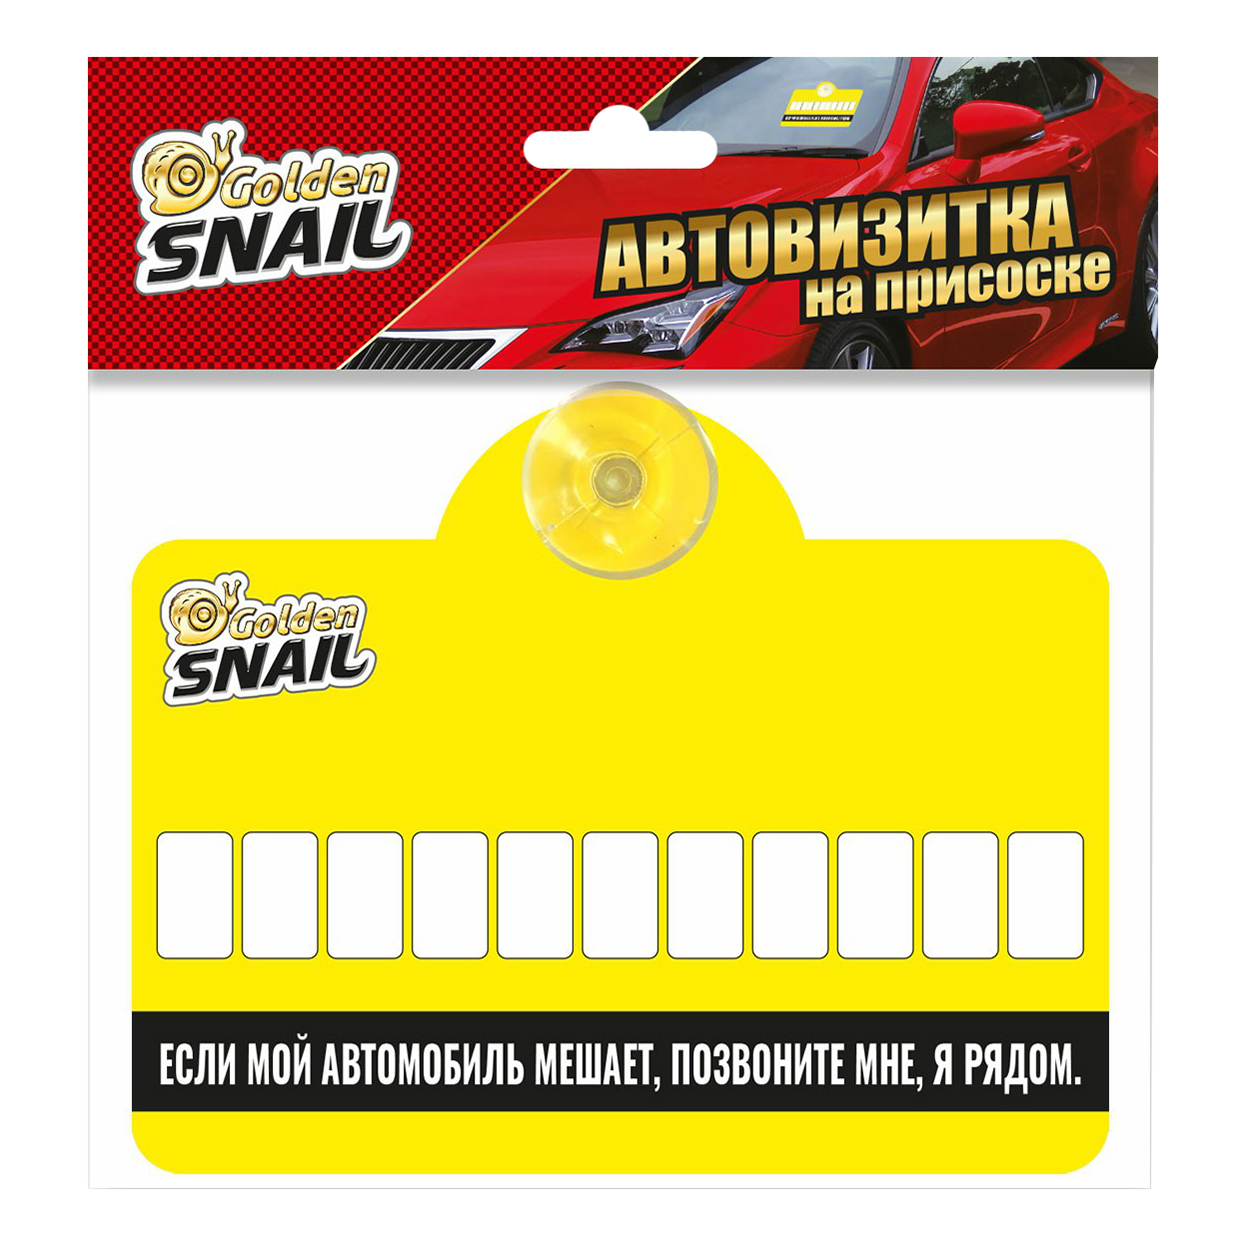 Табличка для автомобиля Golden Snail Автовизитка на присоске